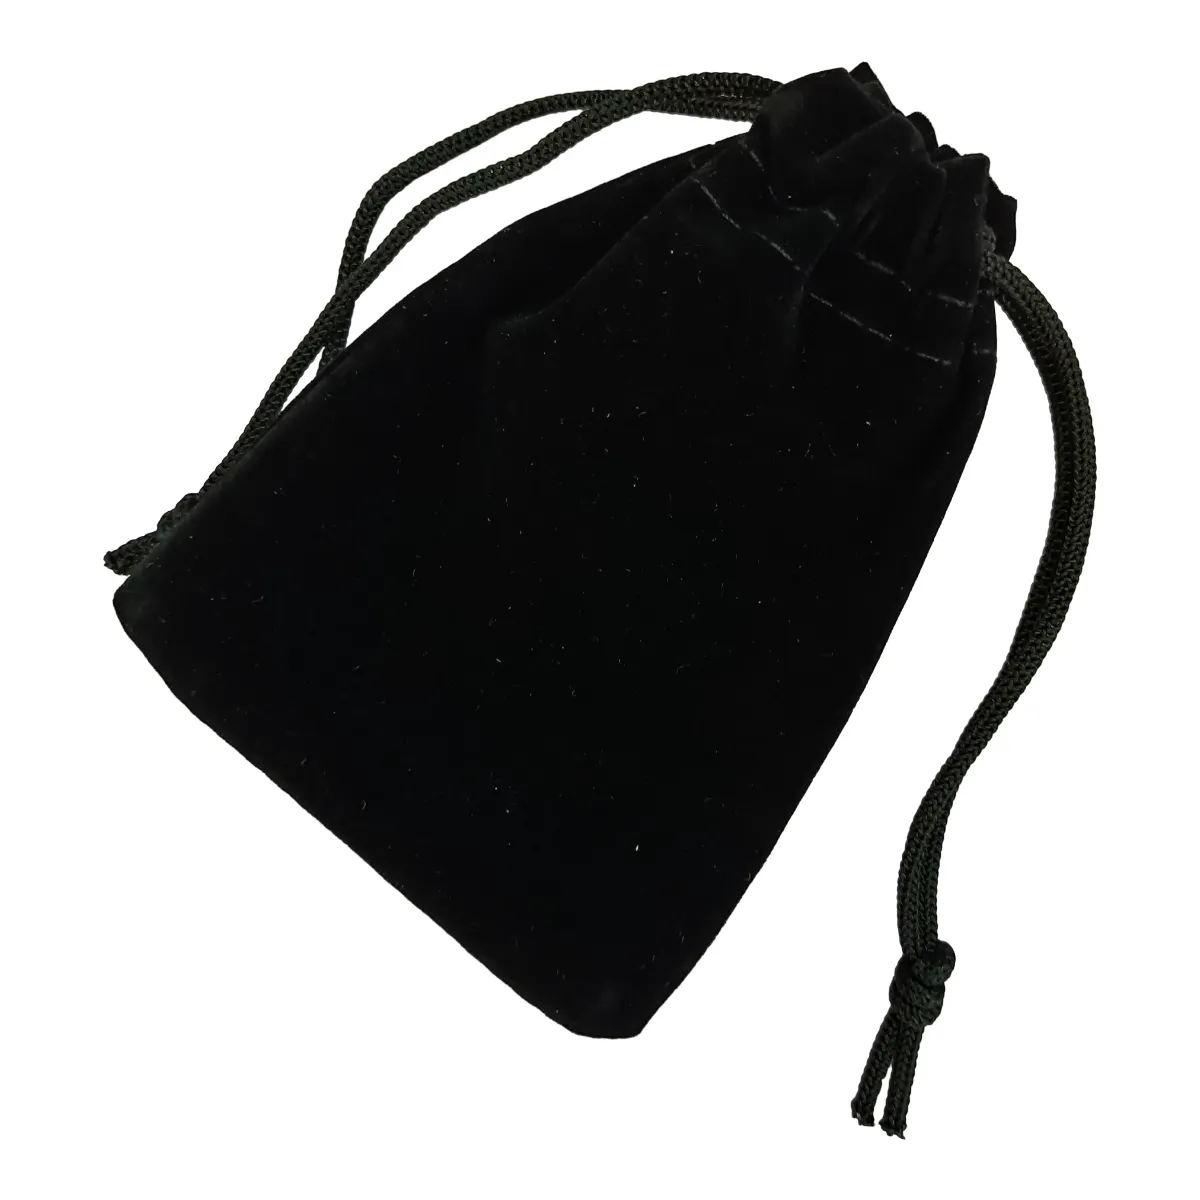 กระเป๋าผ้ากำมะหยี่พร้อมเชือกผูกปากถุงผ้ากำมะหยี่กระเป๋าผ้ากำมะหยี่แบบมีเชือกผูกปากถุงผ้า